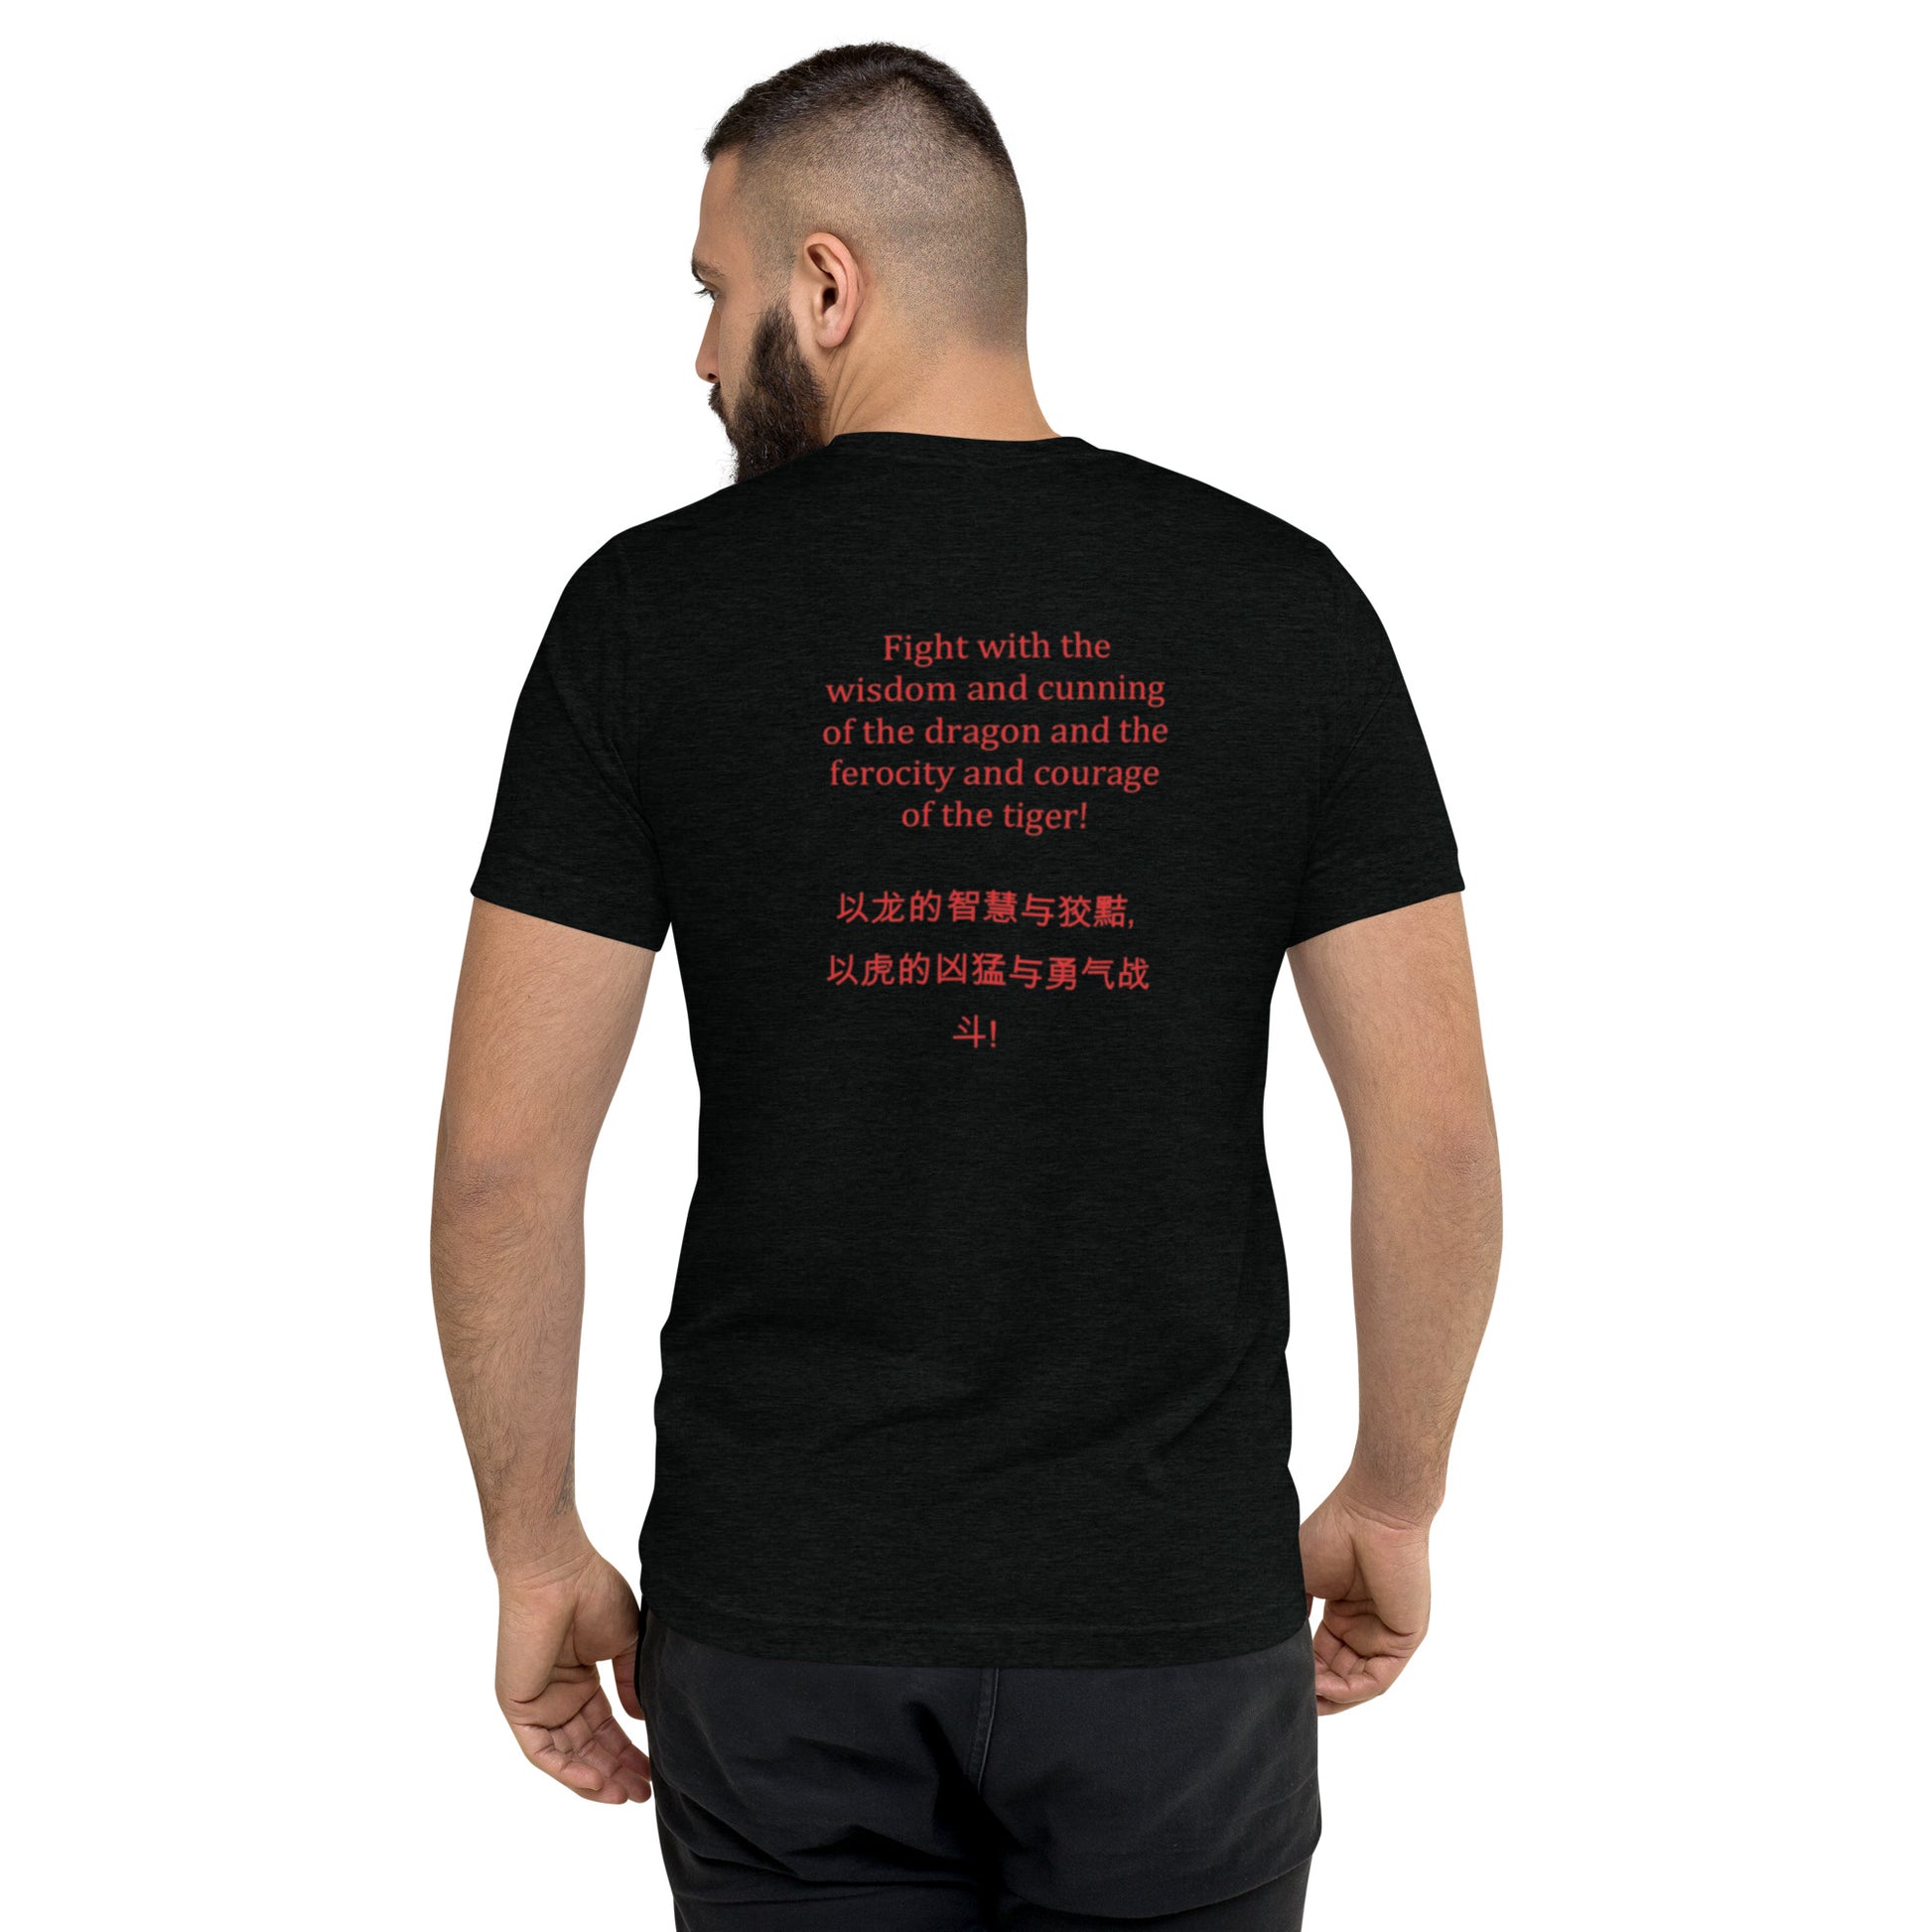 Megazord T-shirt - St. John Enterprises